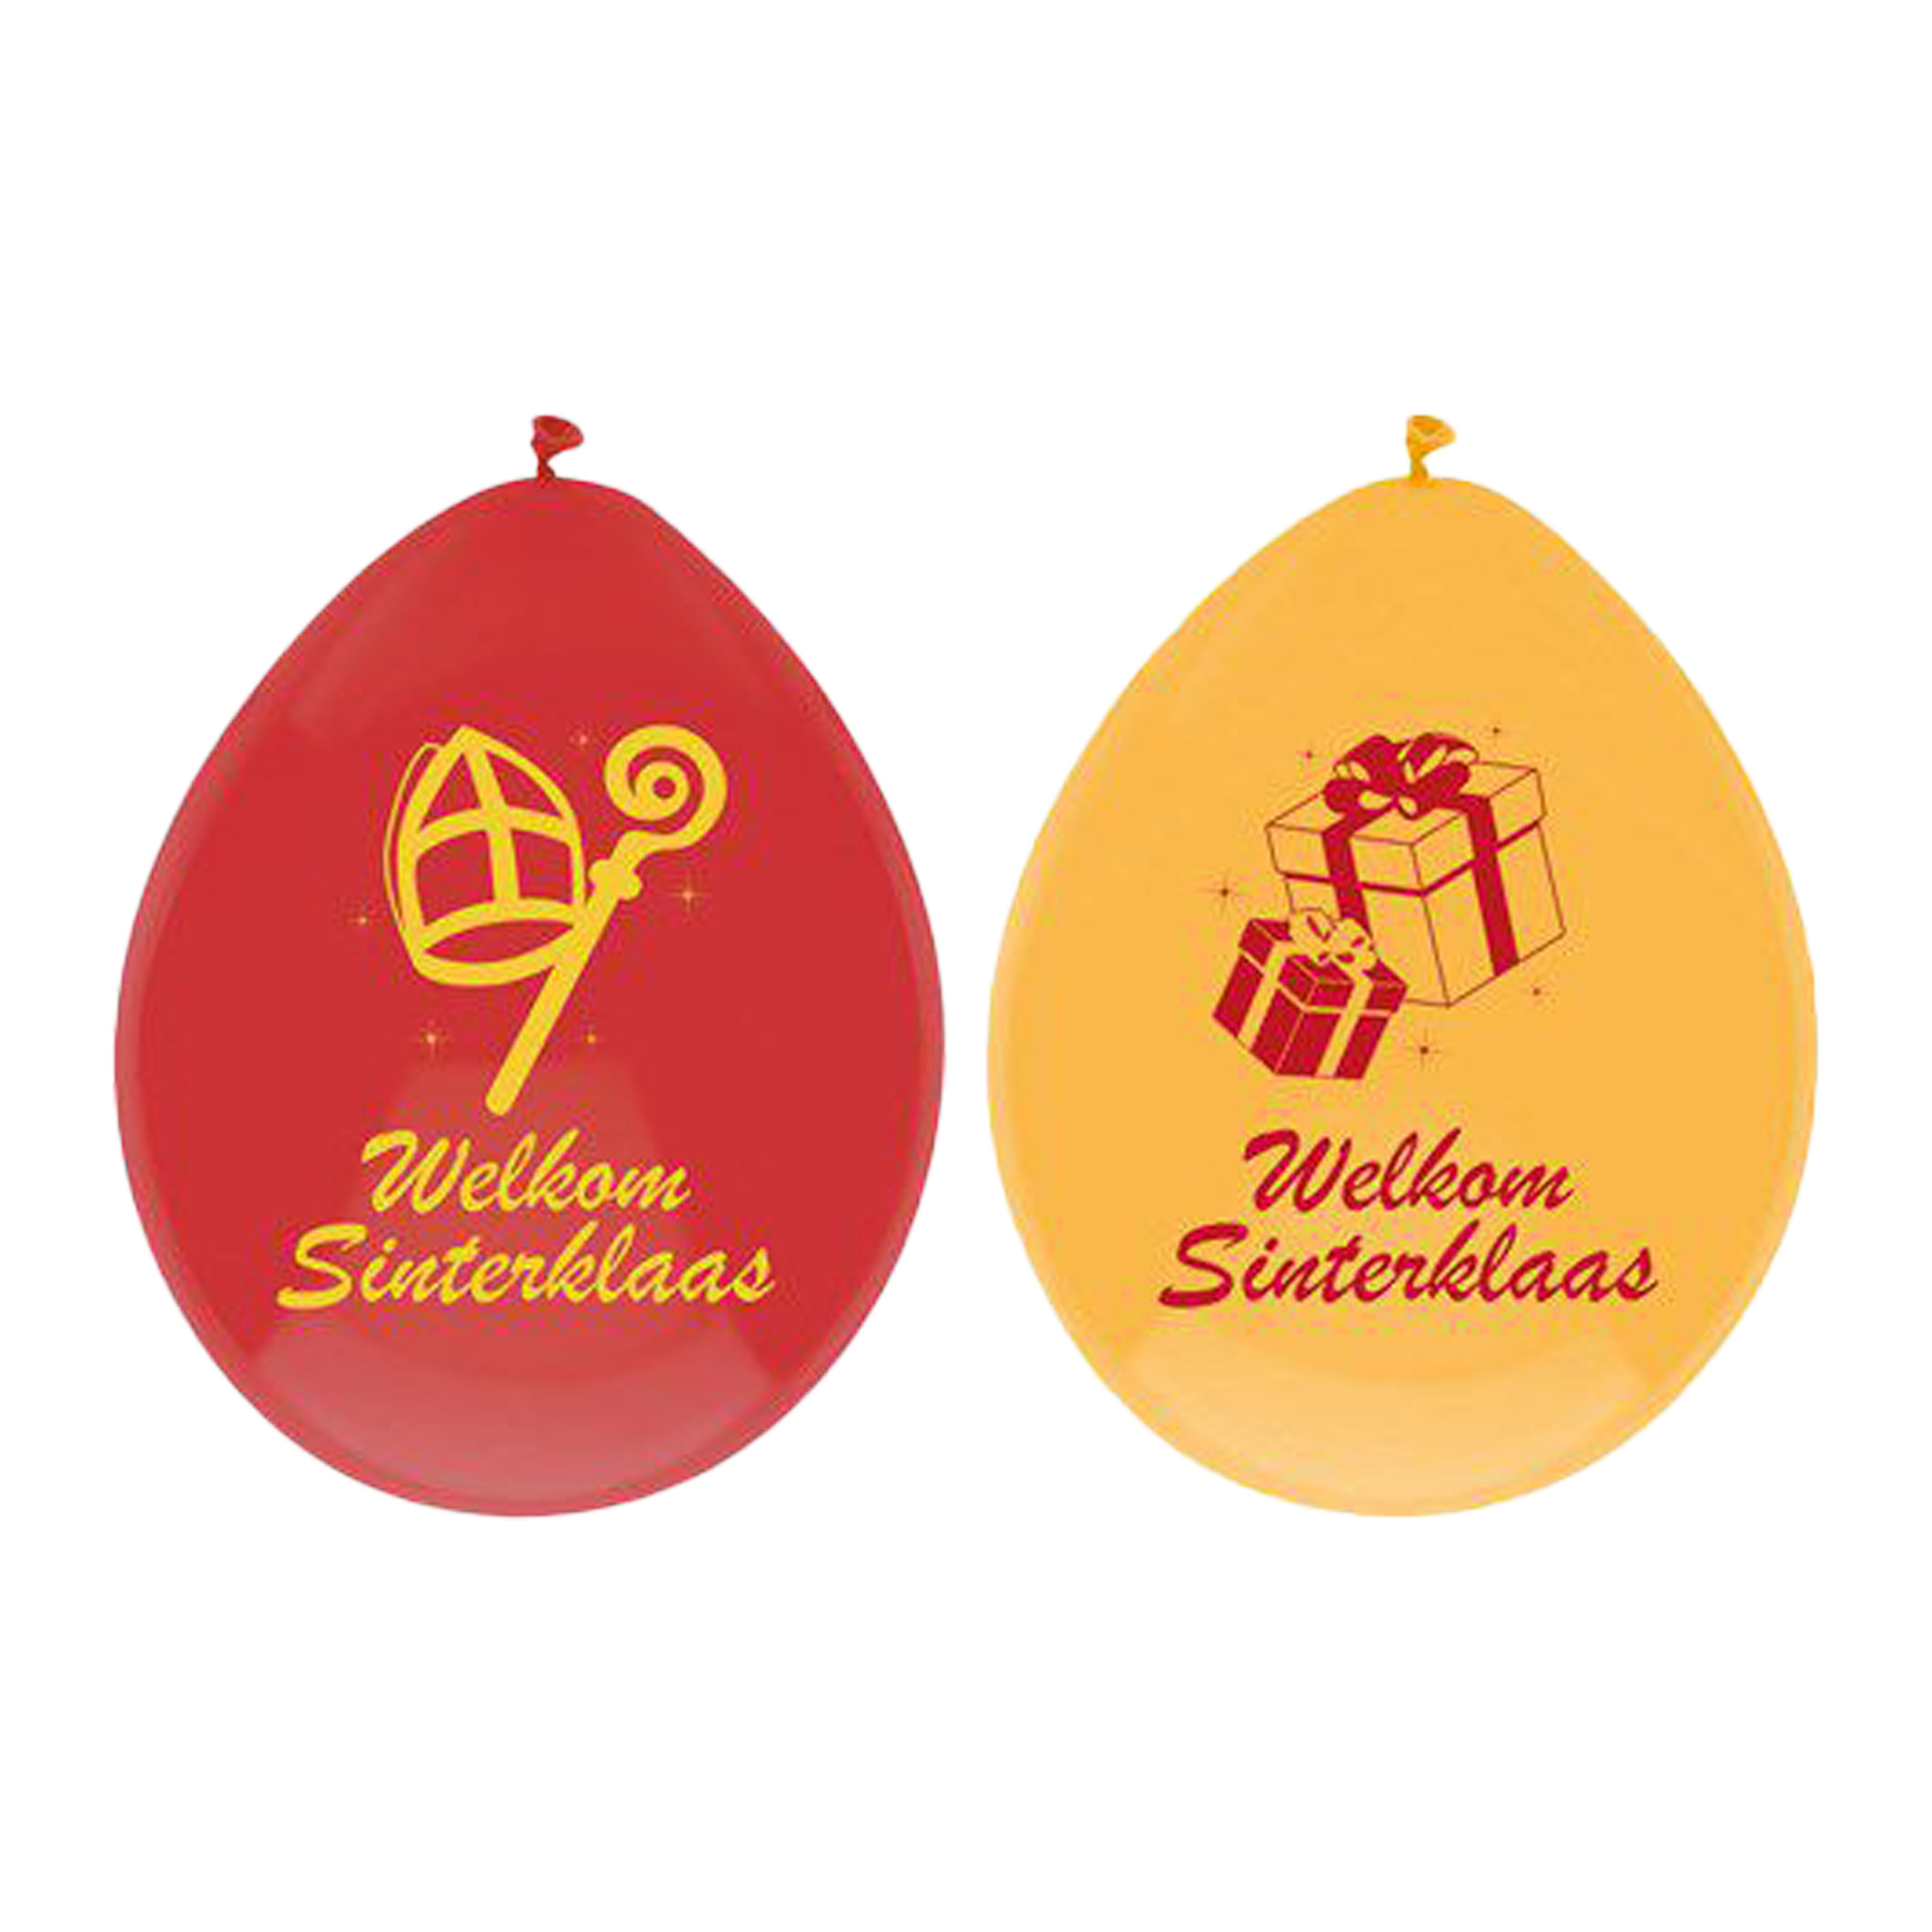 Welkom Sinterklaas ballonnen - 12x - geel/rood